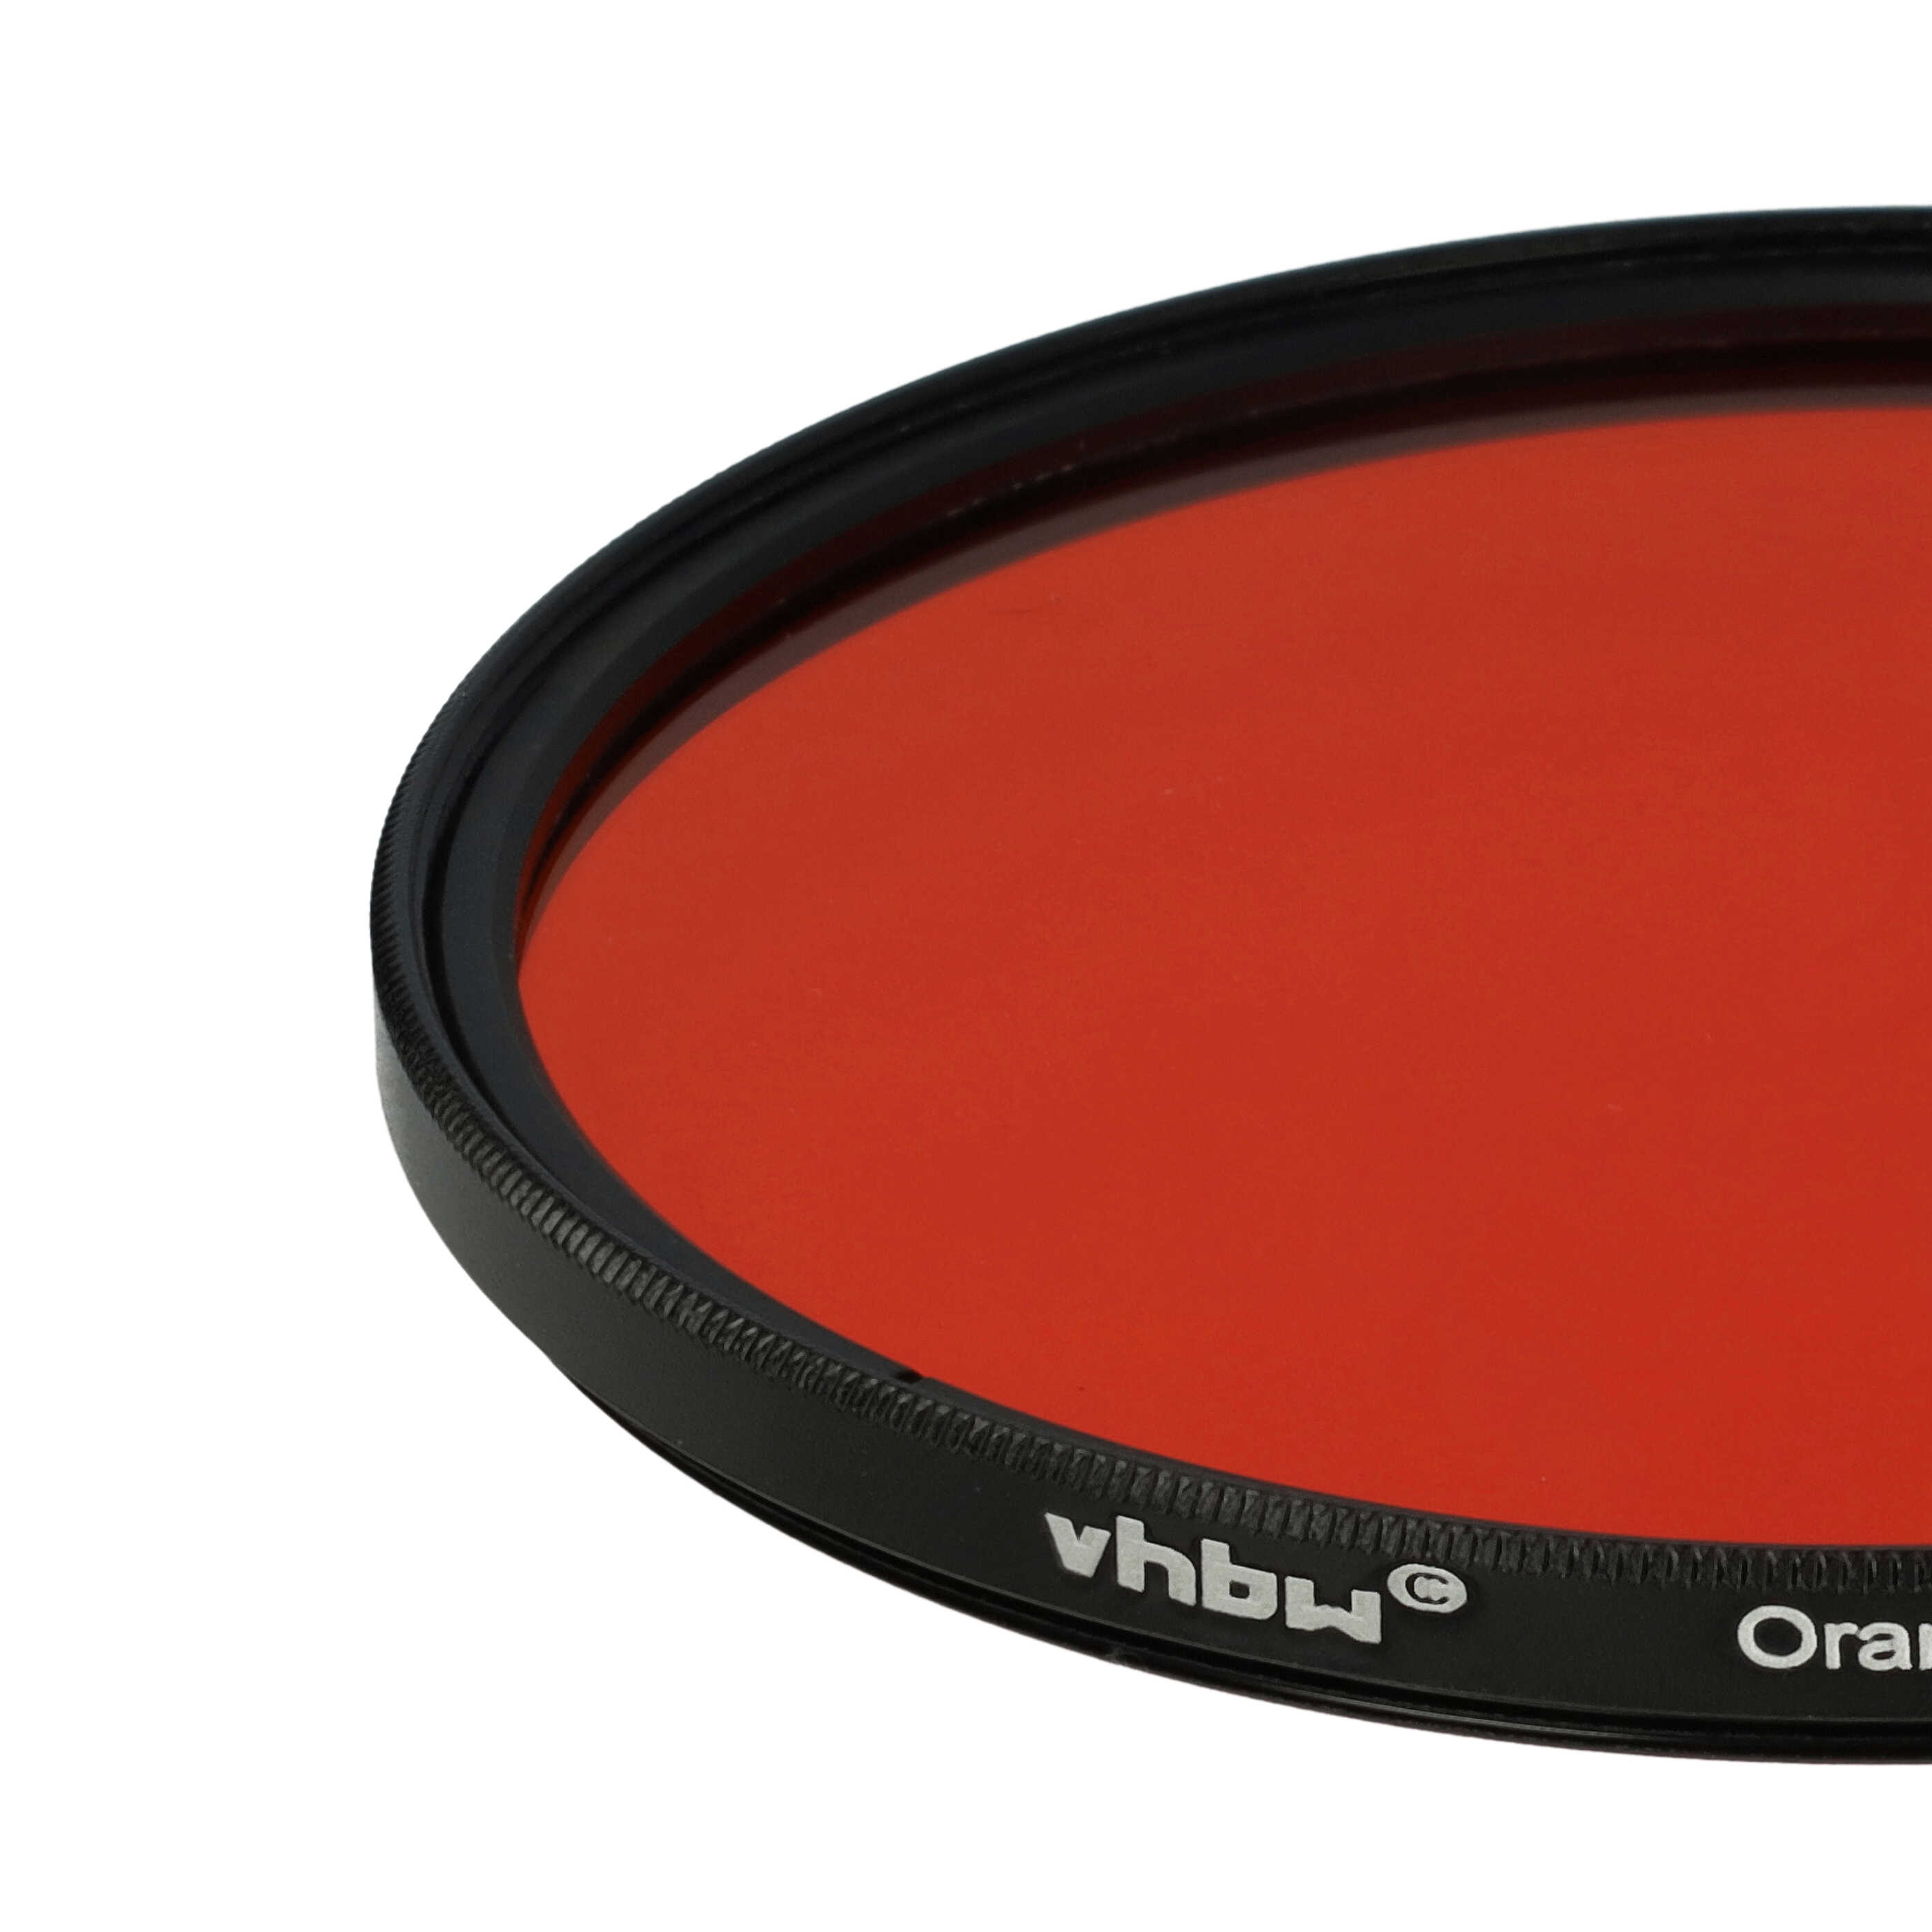 Filtre de couleur orange pour objectifs d'appareils photo de 77 mm - Filtre orange